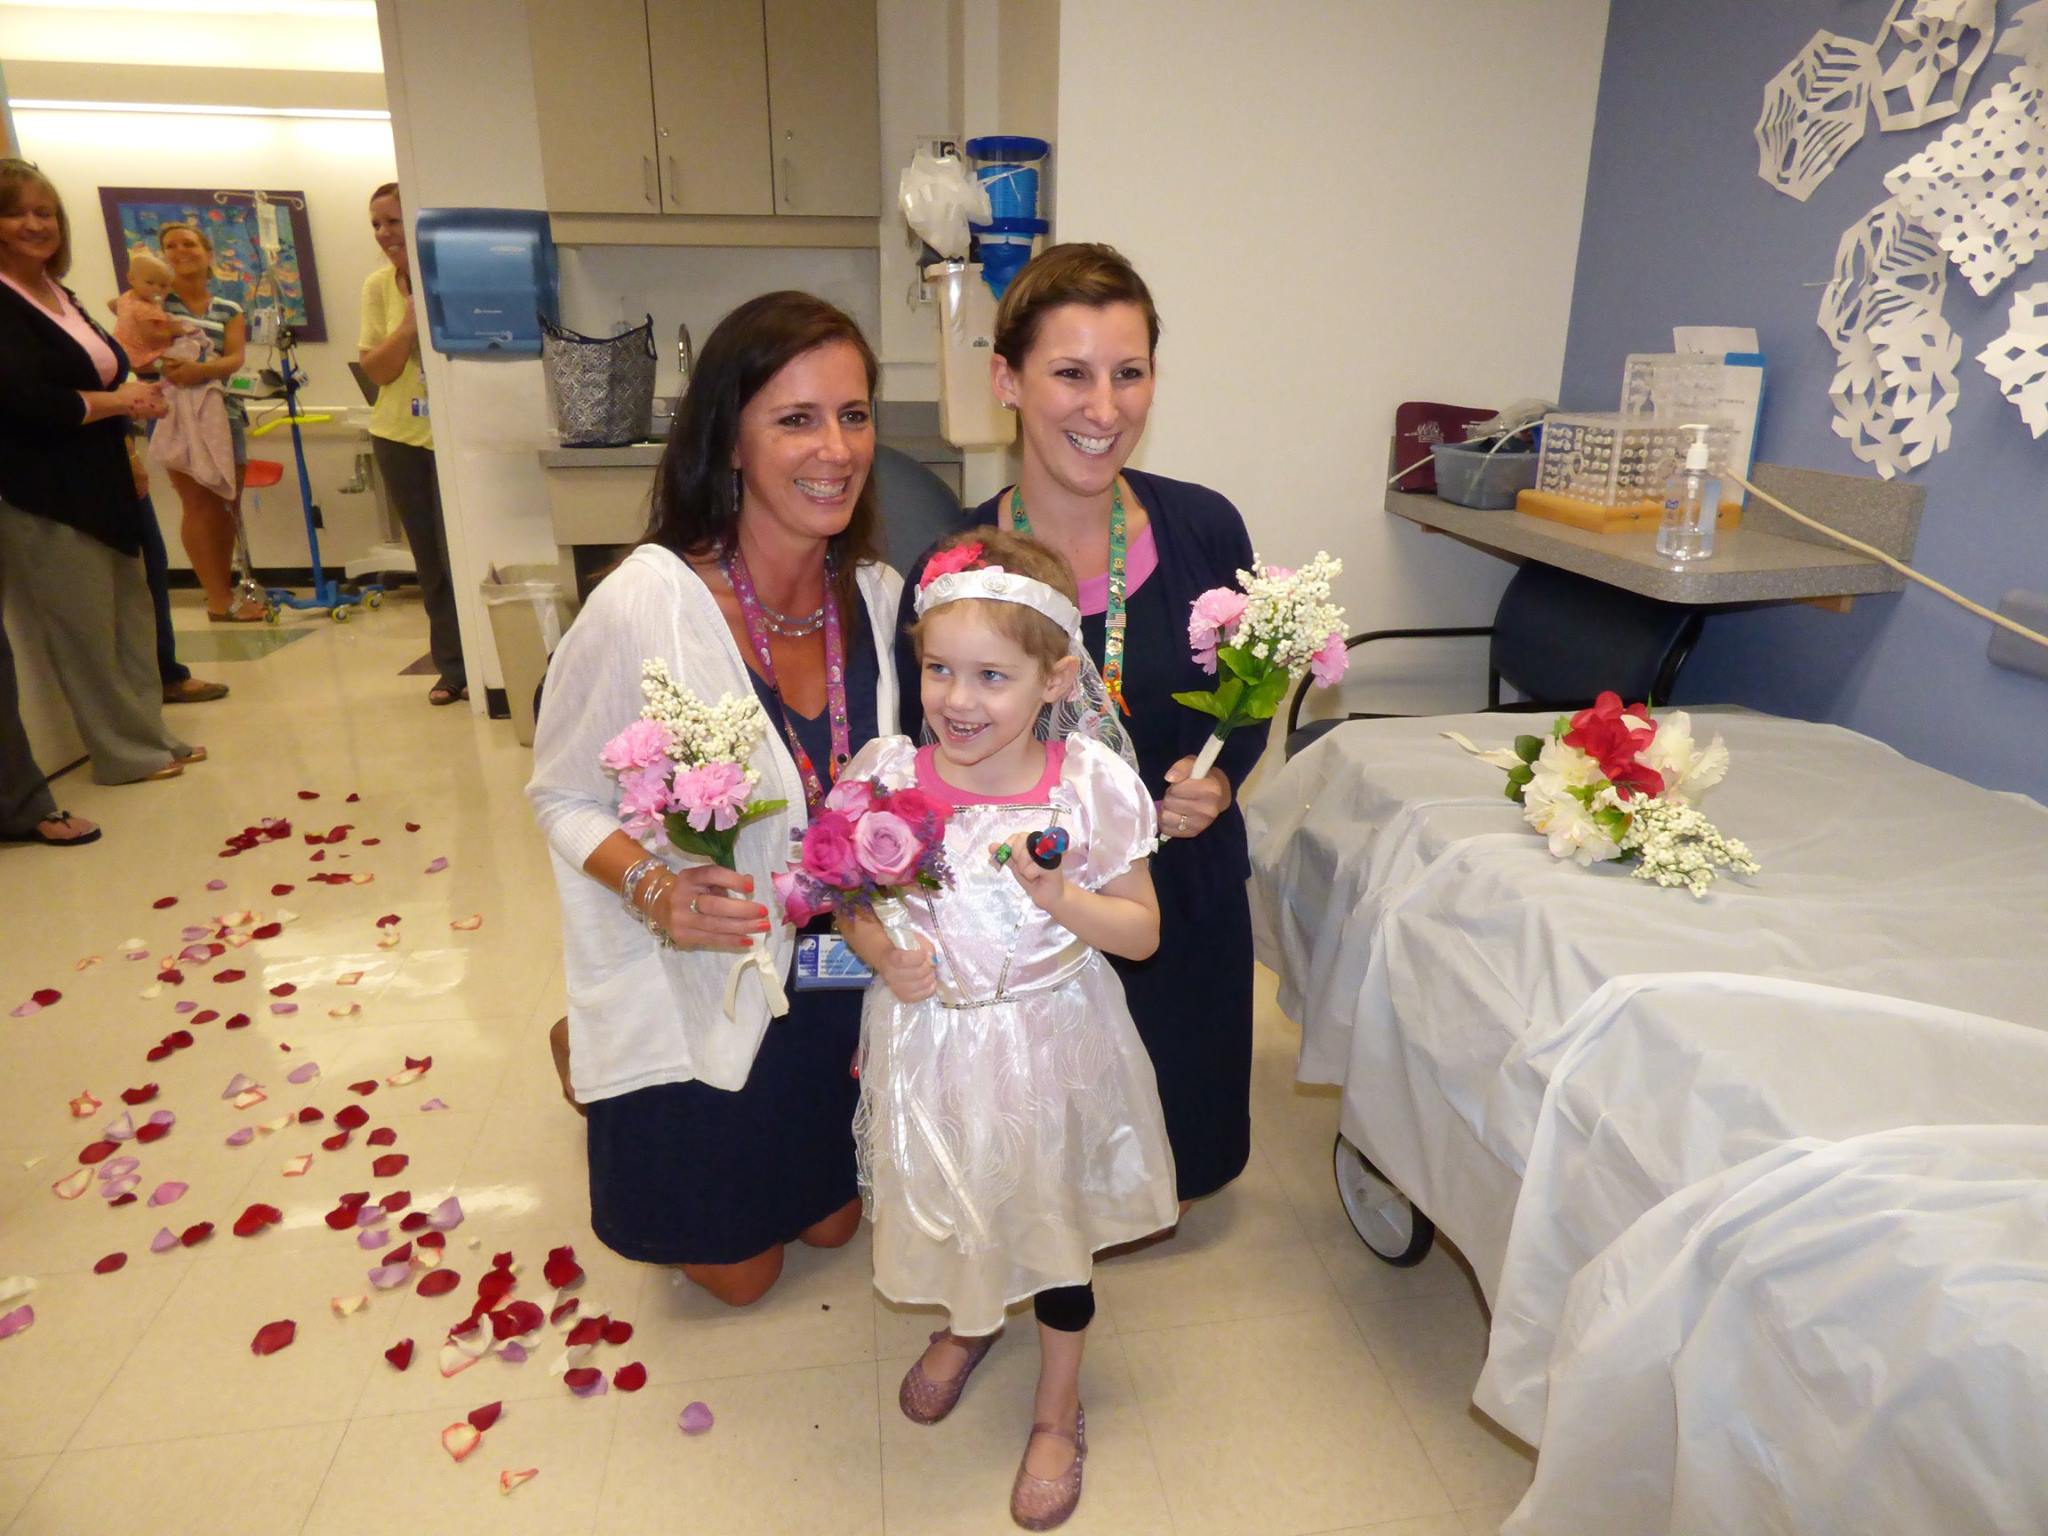 La boda de una niña con leucemia y su enfermero